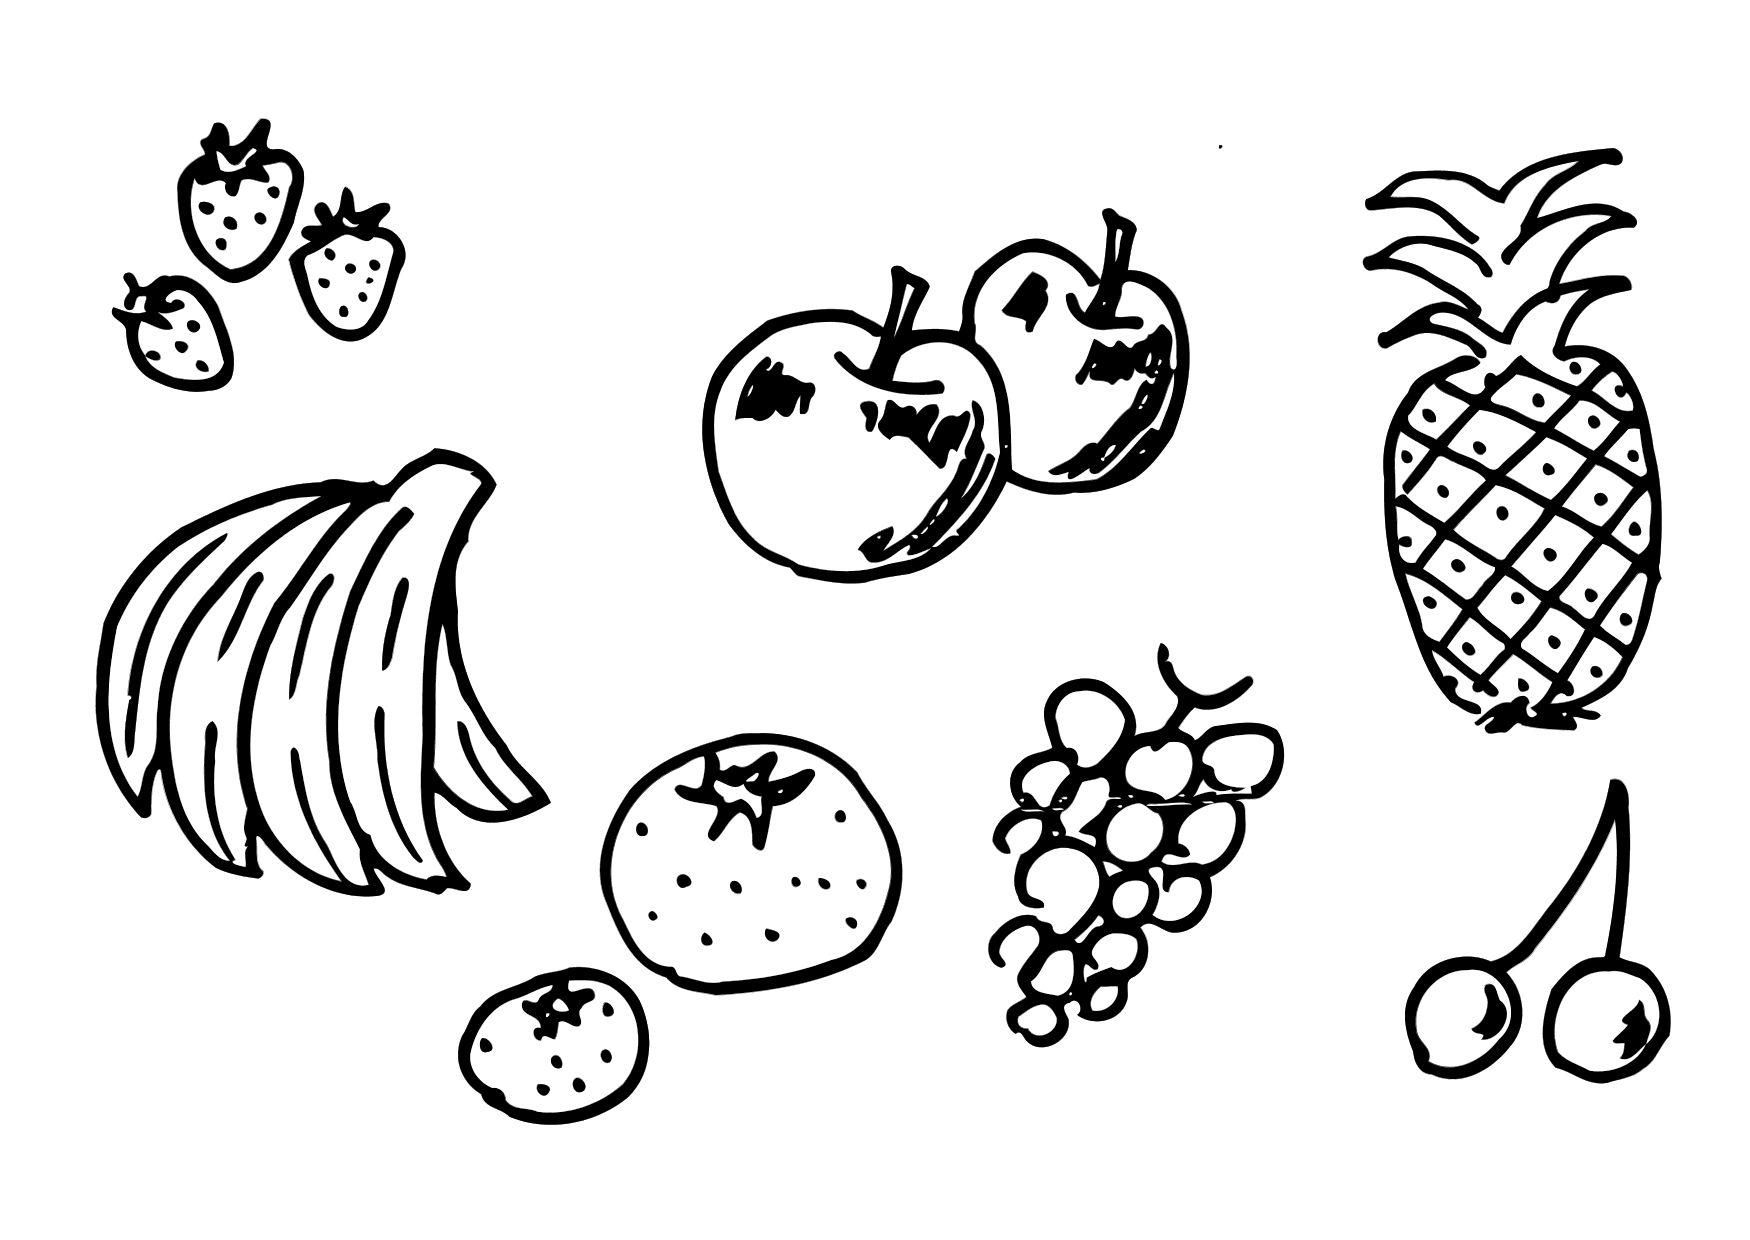 Páginas para colorir de frutas - páginas para colorir gratuitas